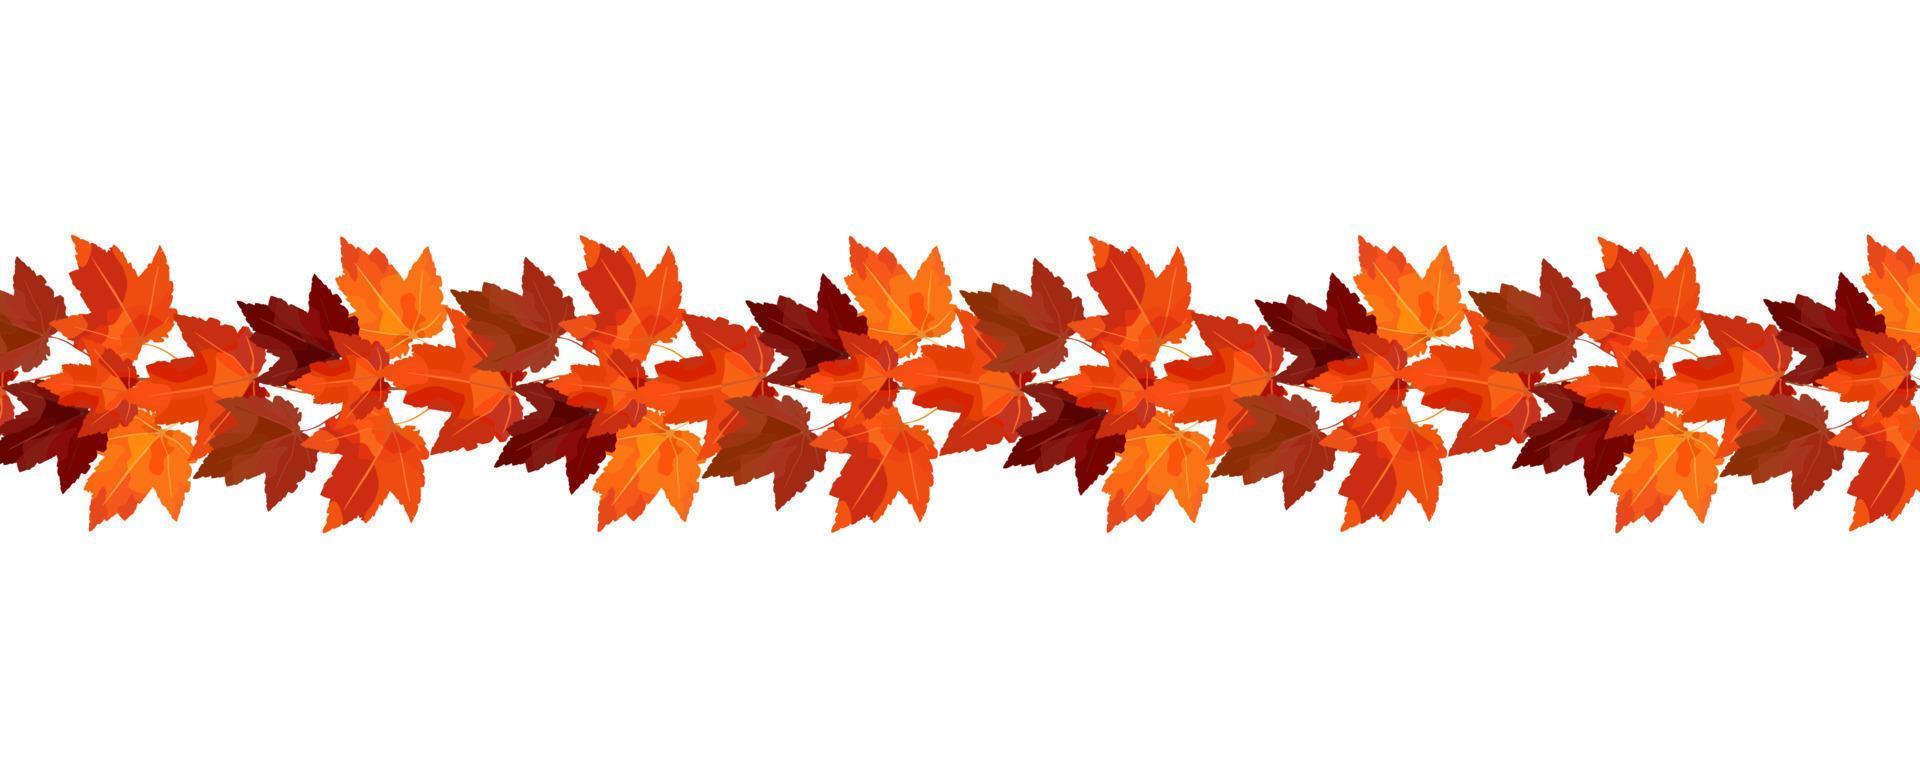 bordure de branches d'érable d'automne. bordure vectorielle pour les conceptions d'automne confortables, les cafés, les menus, les bannières publicitaires vecteur